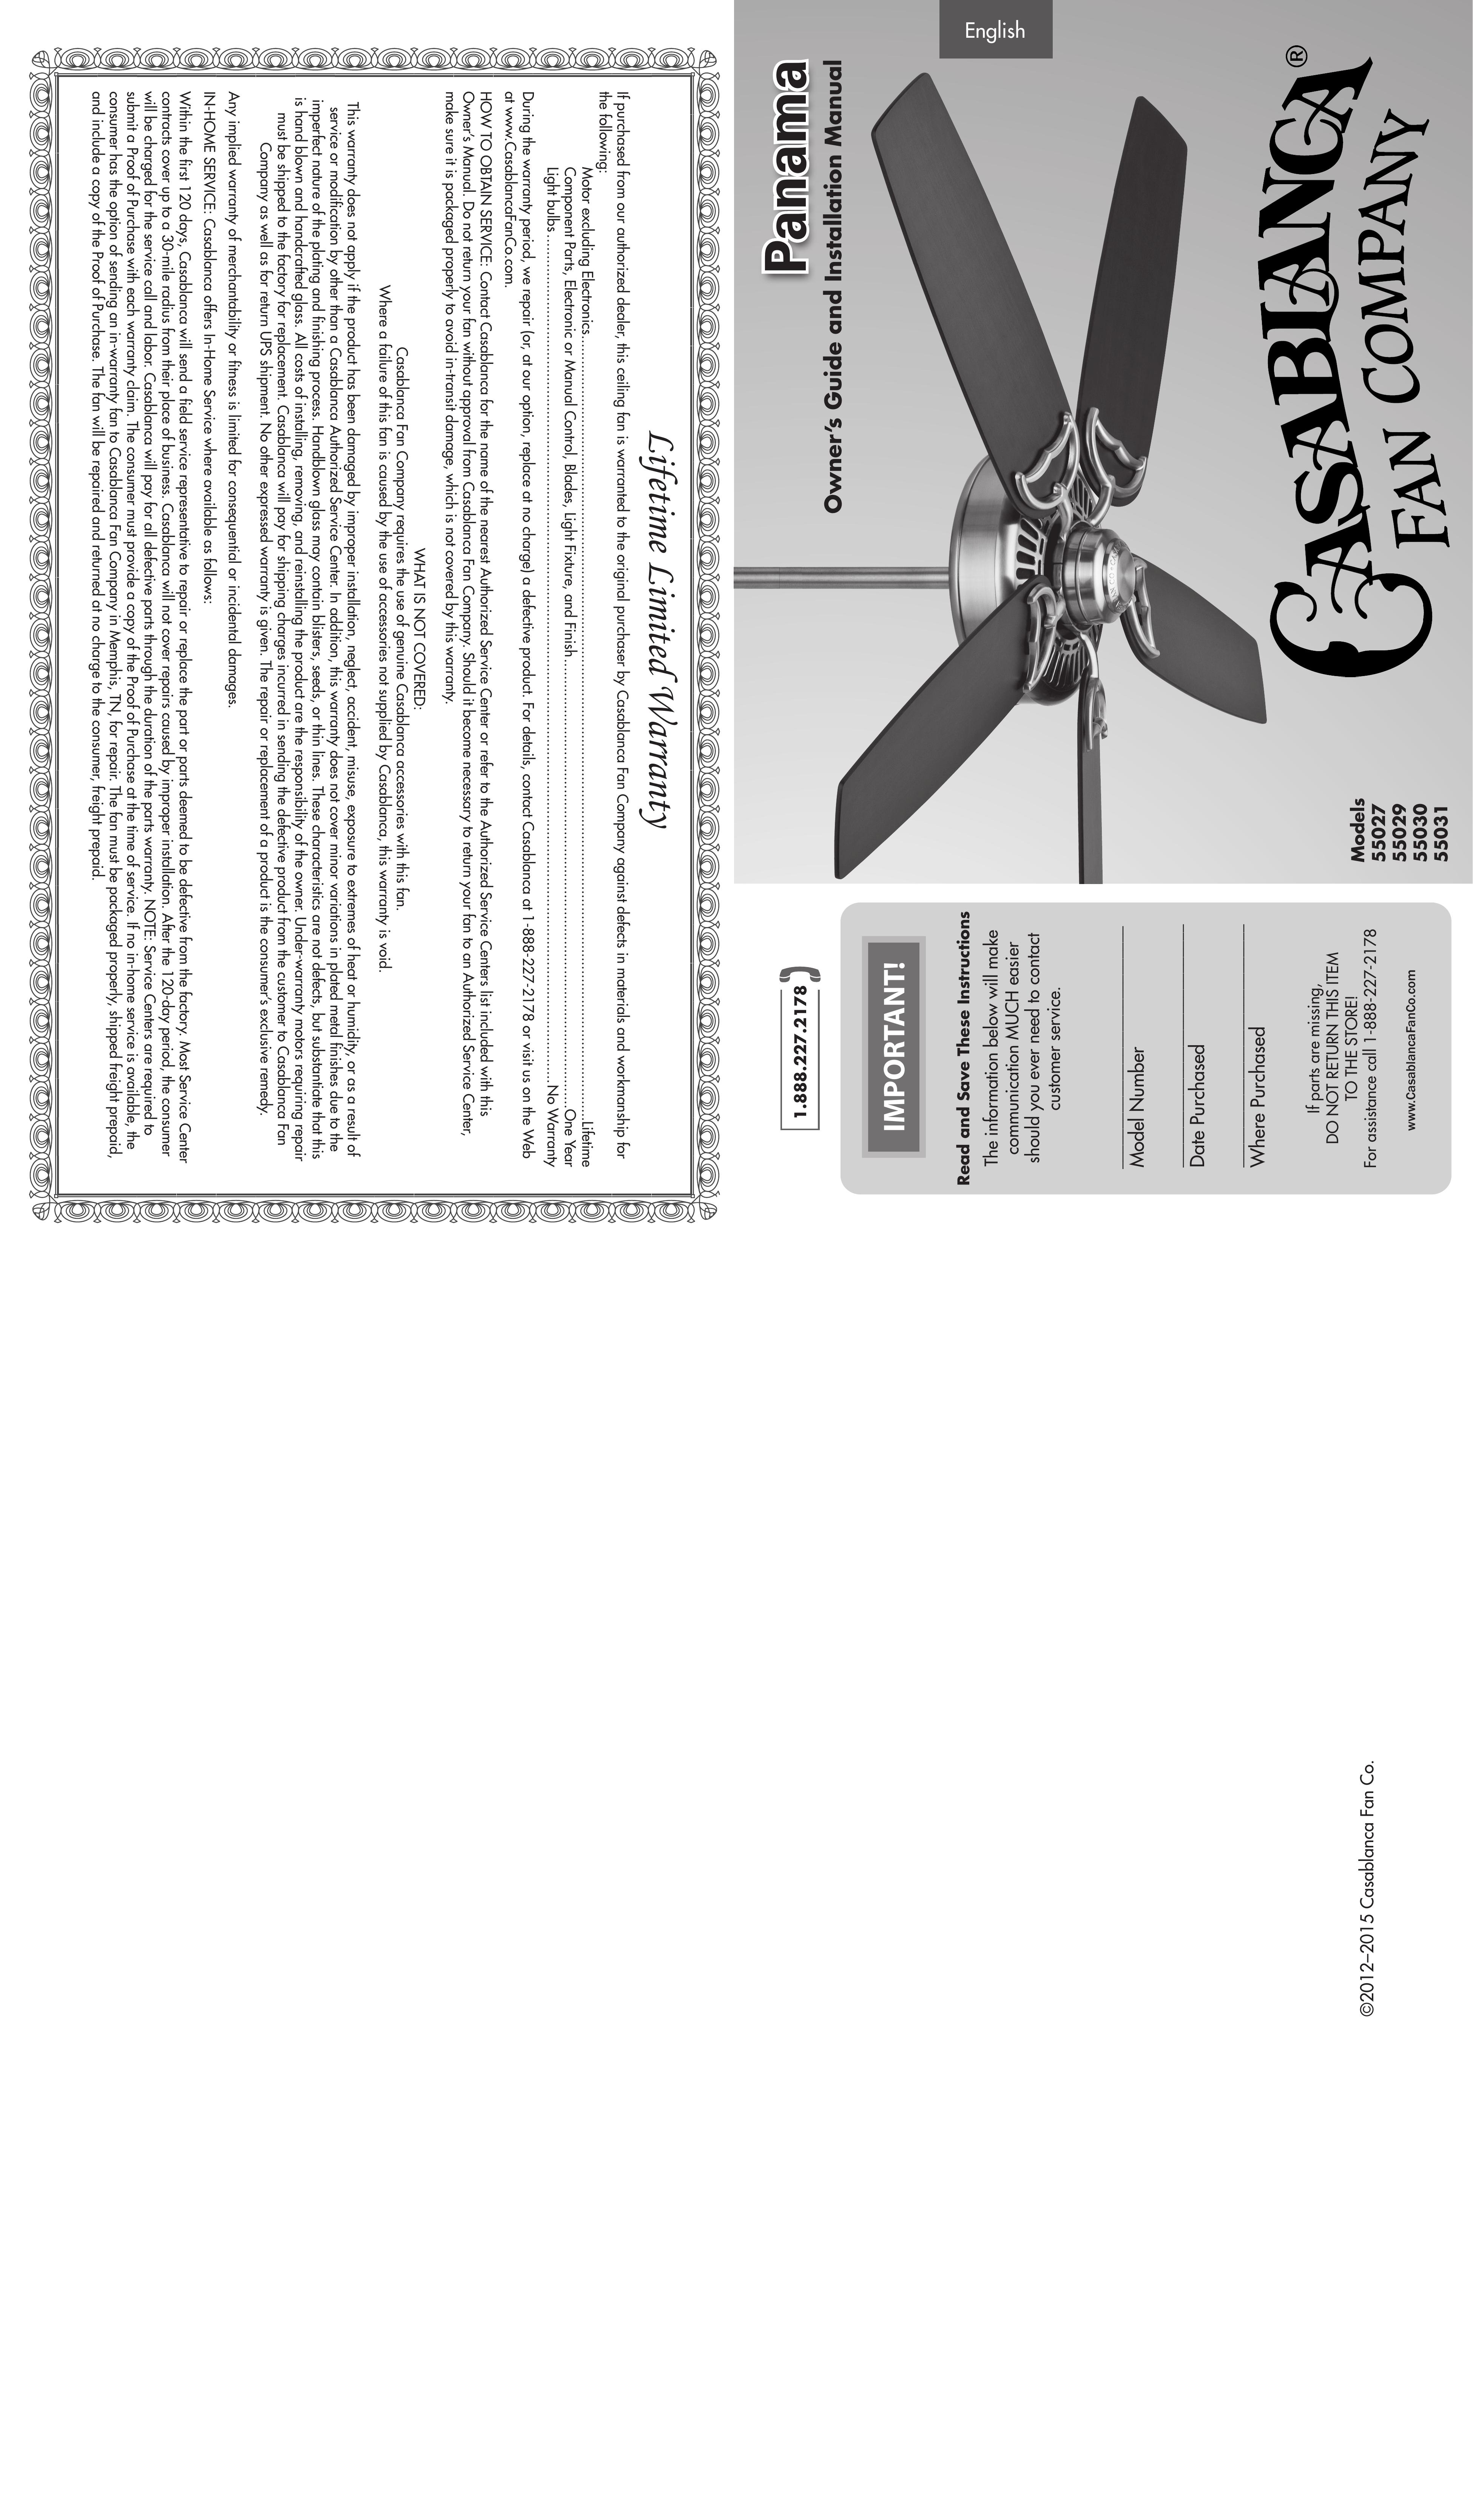 Casablanca Fan Company 55031 Outdoor Ceiling Fan User Manual